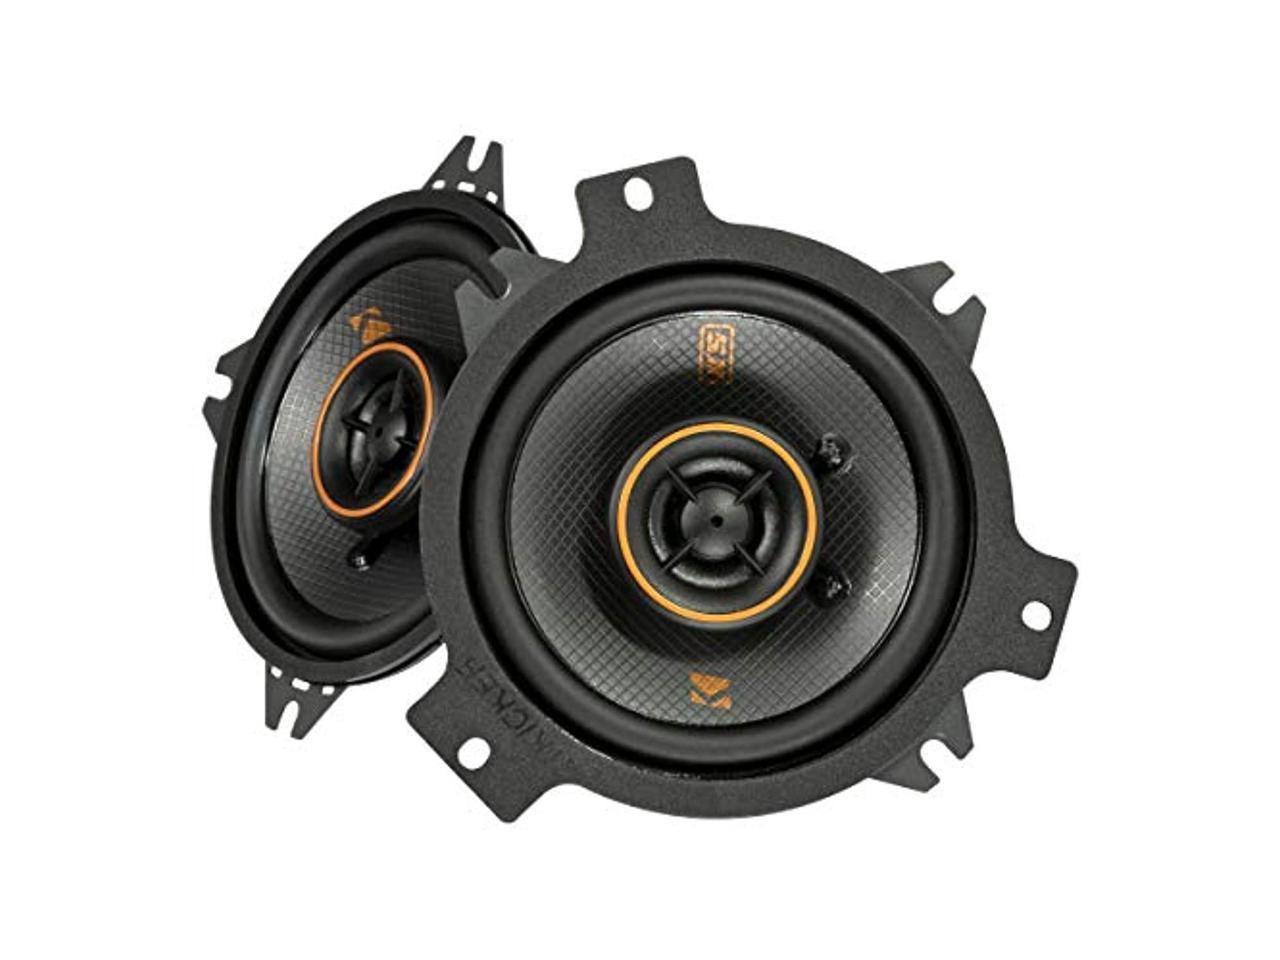 Metra Bluetooth Audio Interface W/Crunch Car Speakers Pair & Metra Mounting Ring 